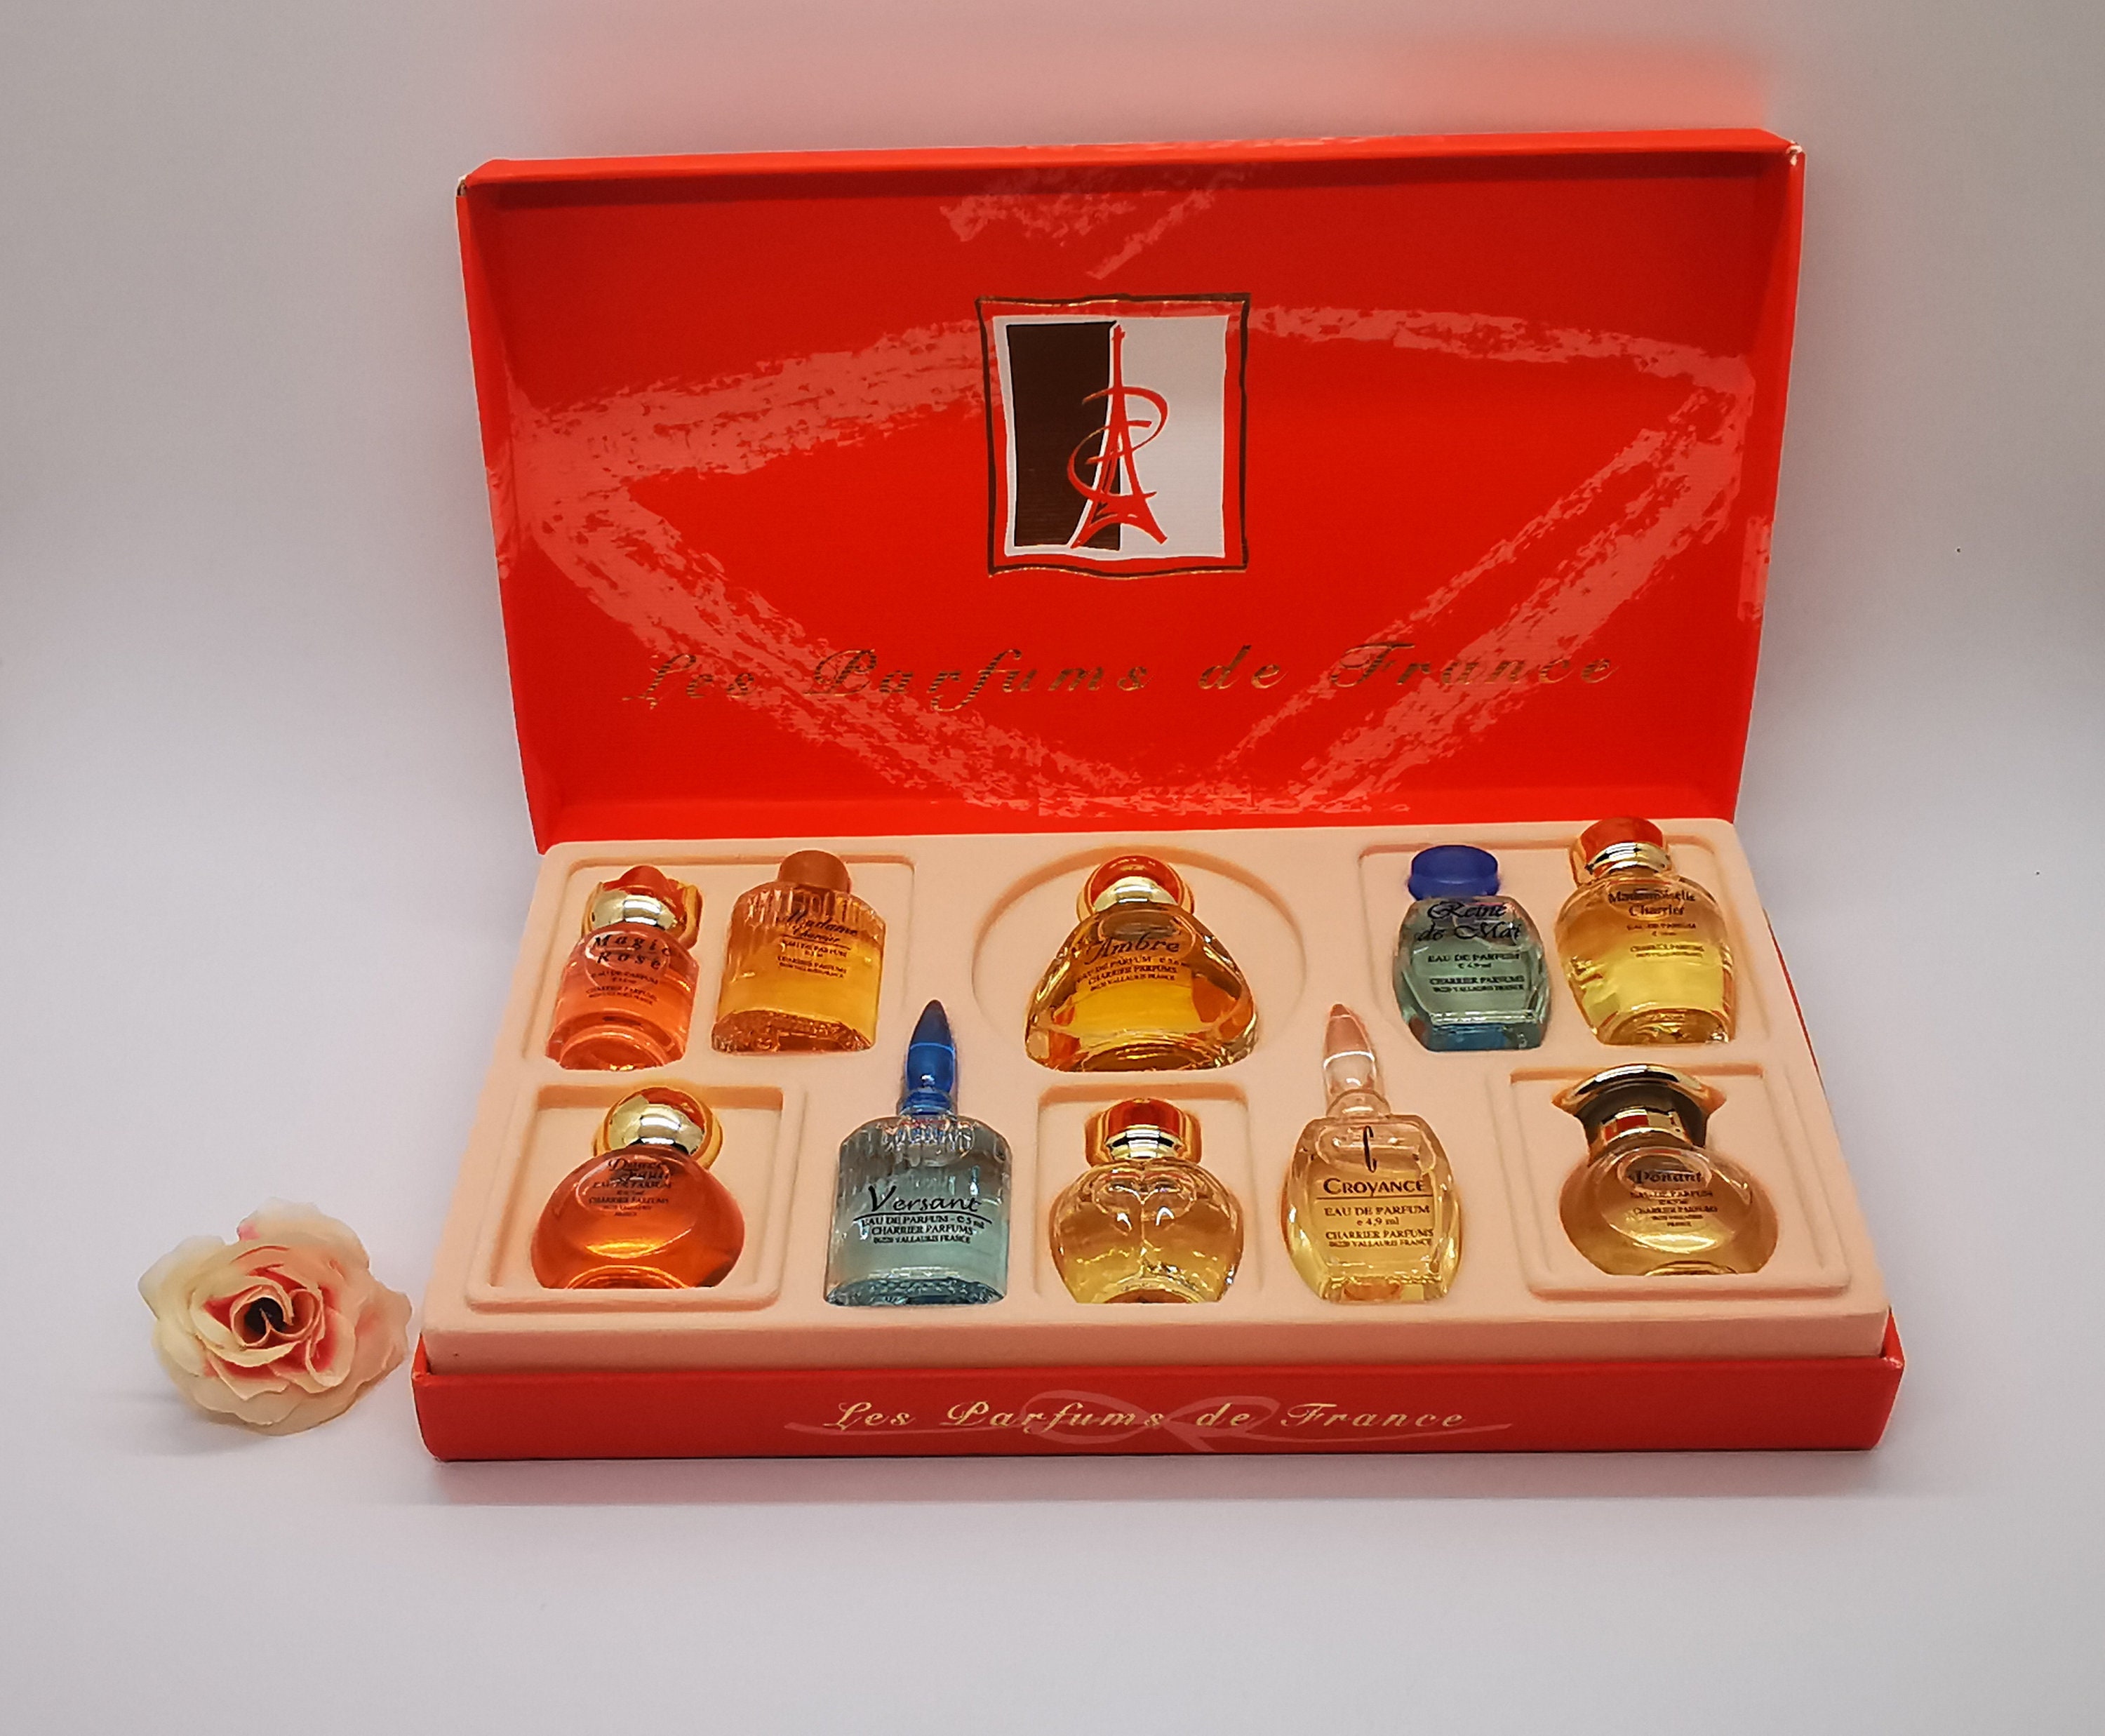 Parfum Miniature Set 